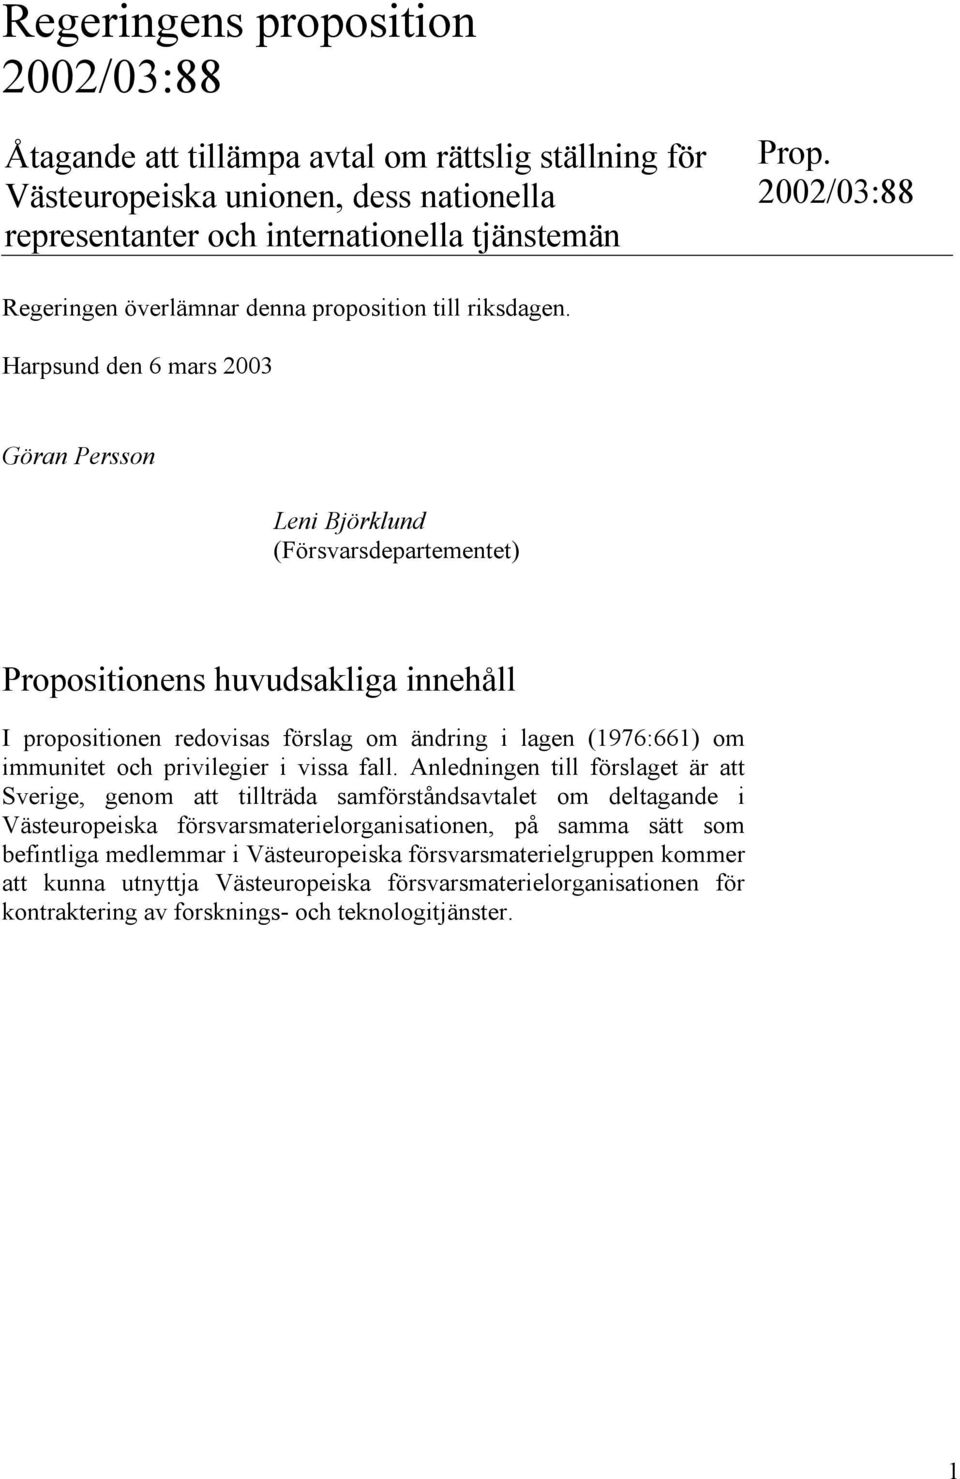 Harpsund den 6 mars 2003 Göran Persson Leni Björklund (Försvarsdepartementet) Propositionens huvudsakliga innehåll I propositionen redovisas förslag om ändring i lagen (1976:661) om immunitet och